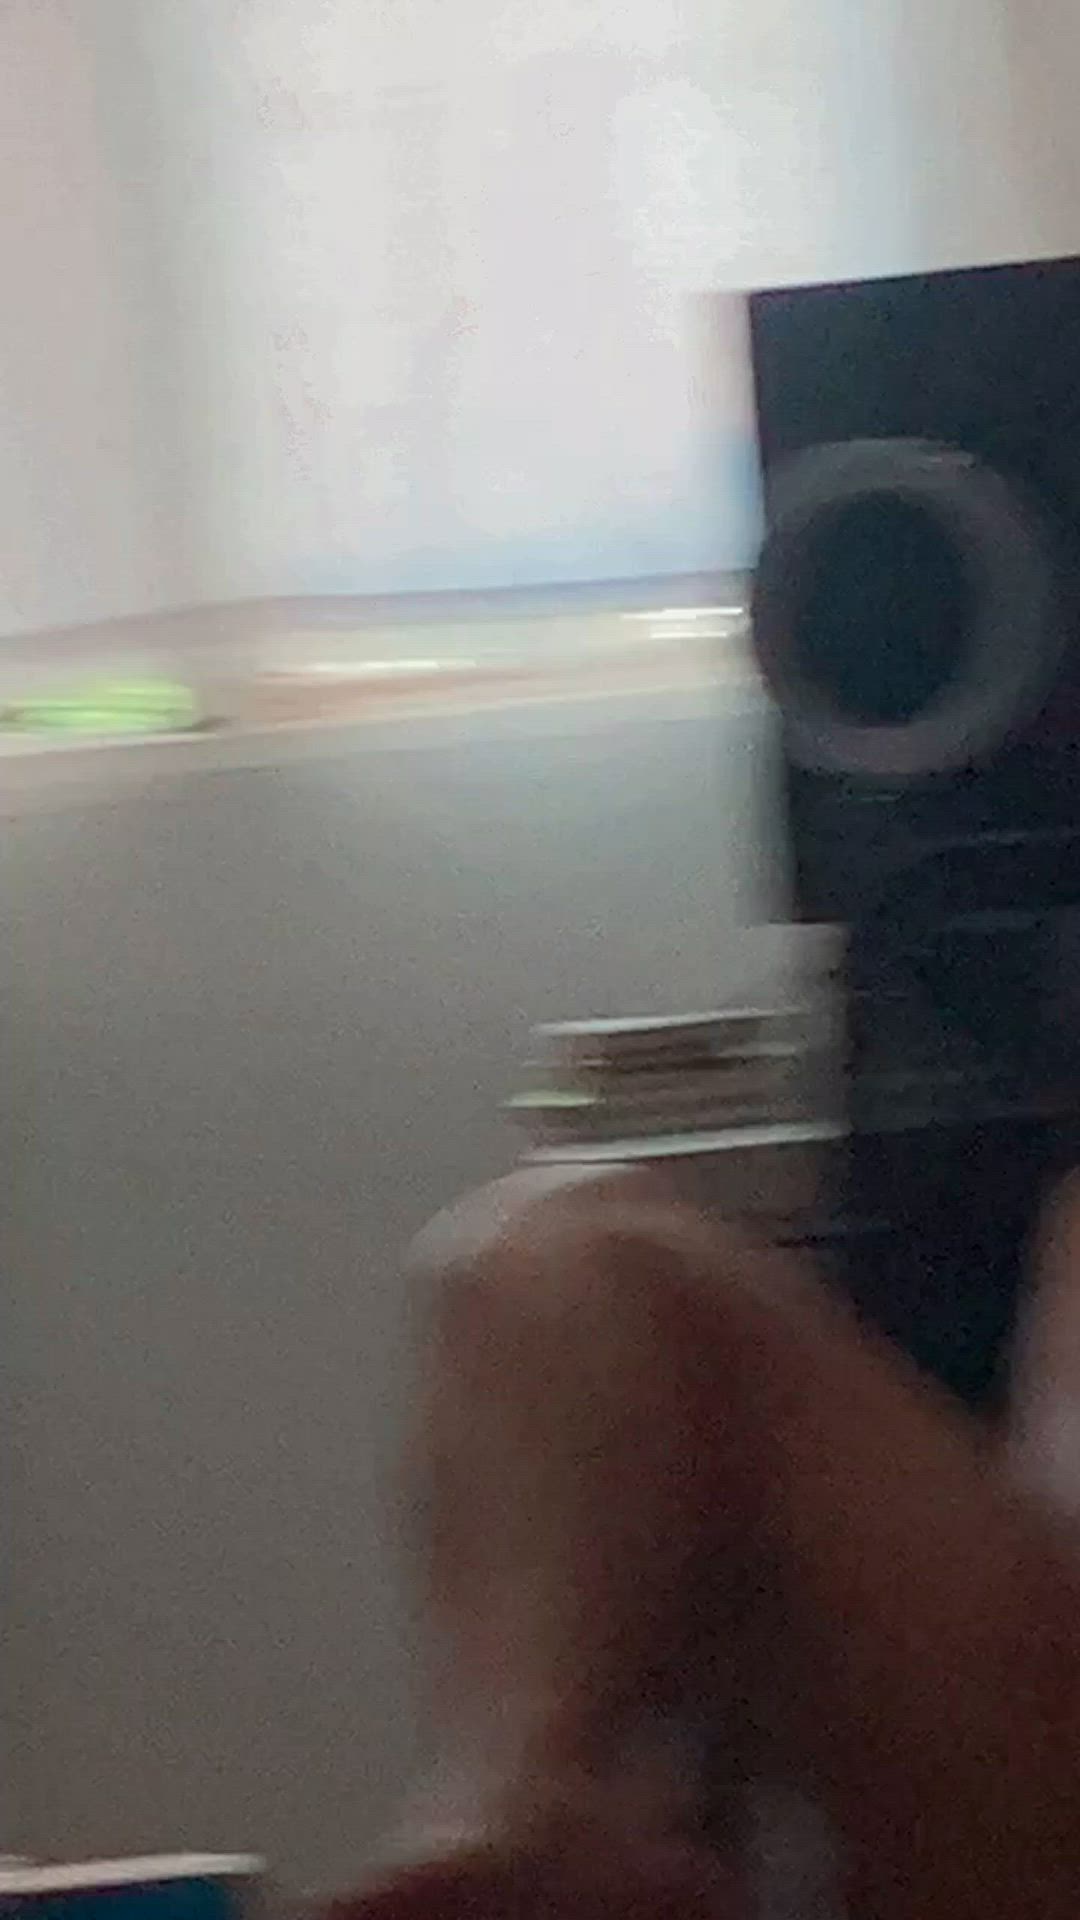 Ass porn video with onlyfans model kalikaramel <strong>@karamel8</strong>